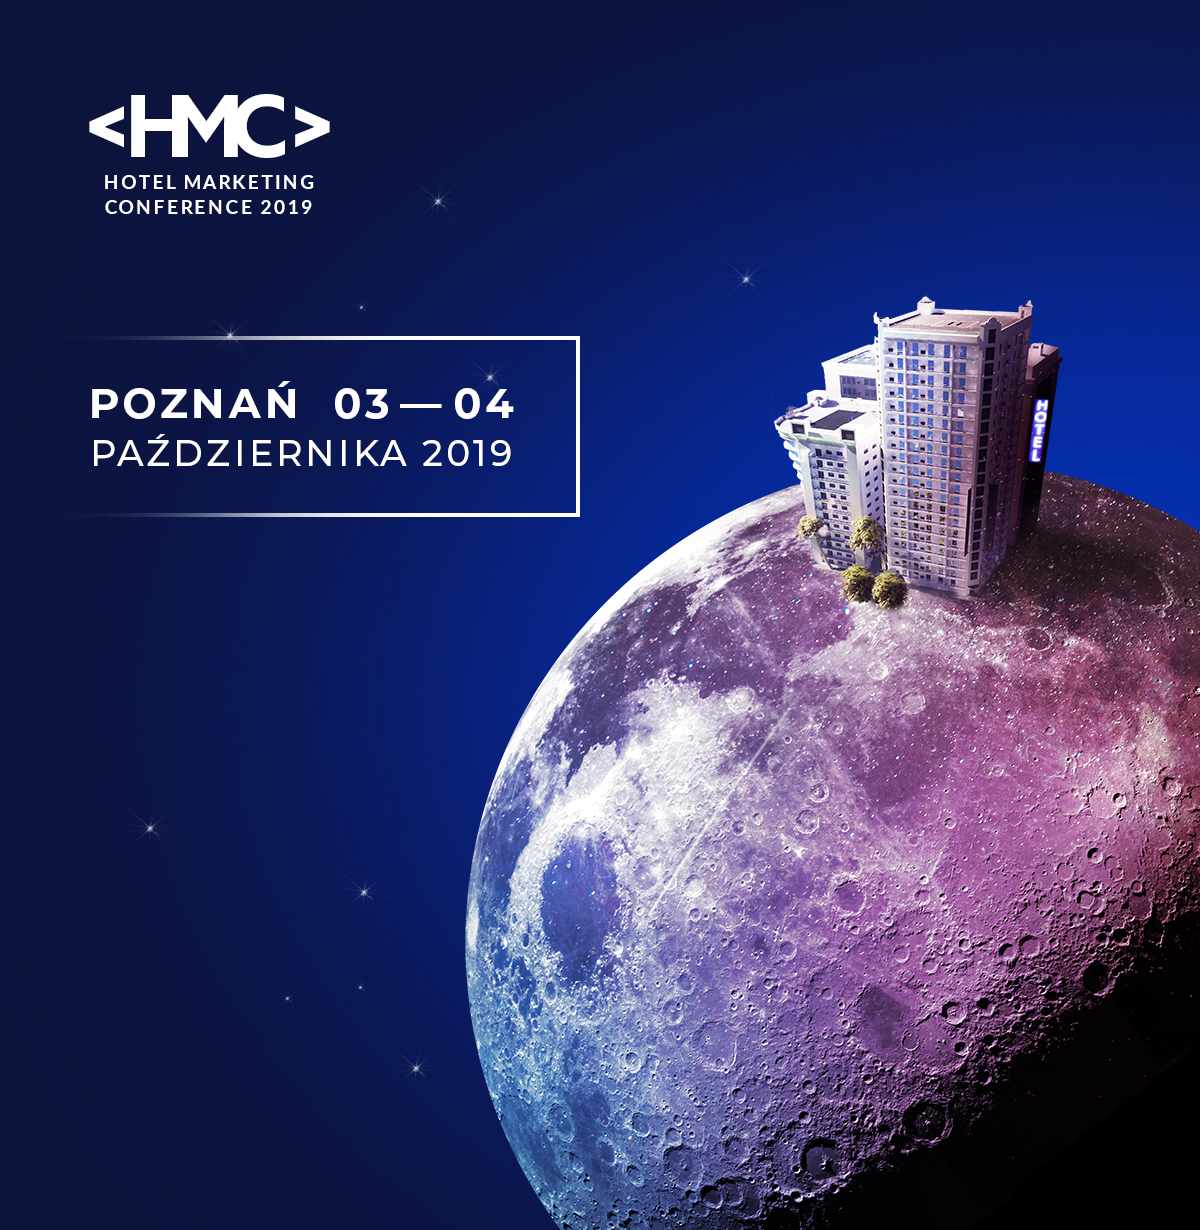 Hotel Marketing Conference 2019 w Poznaniu - największa taka impreza w Europie